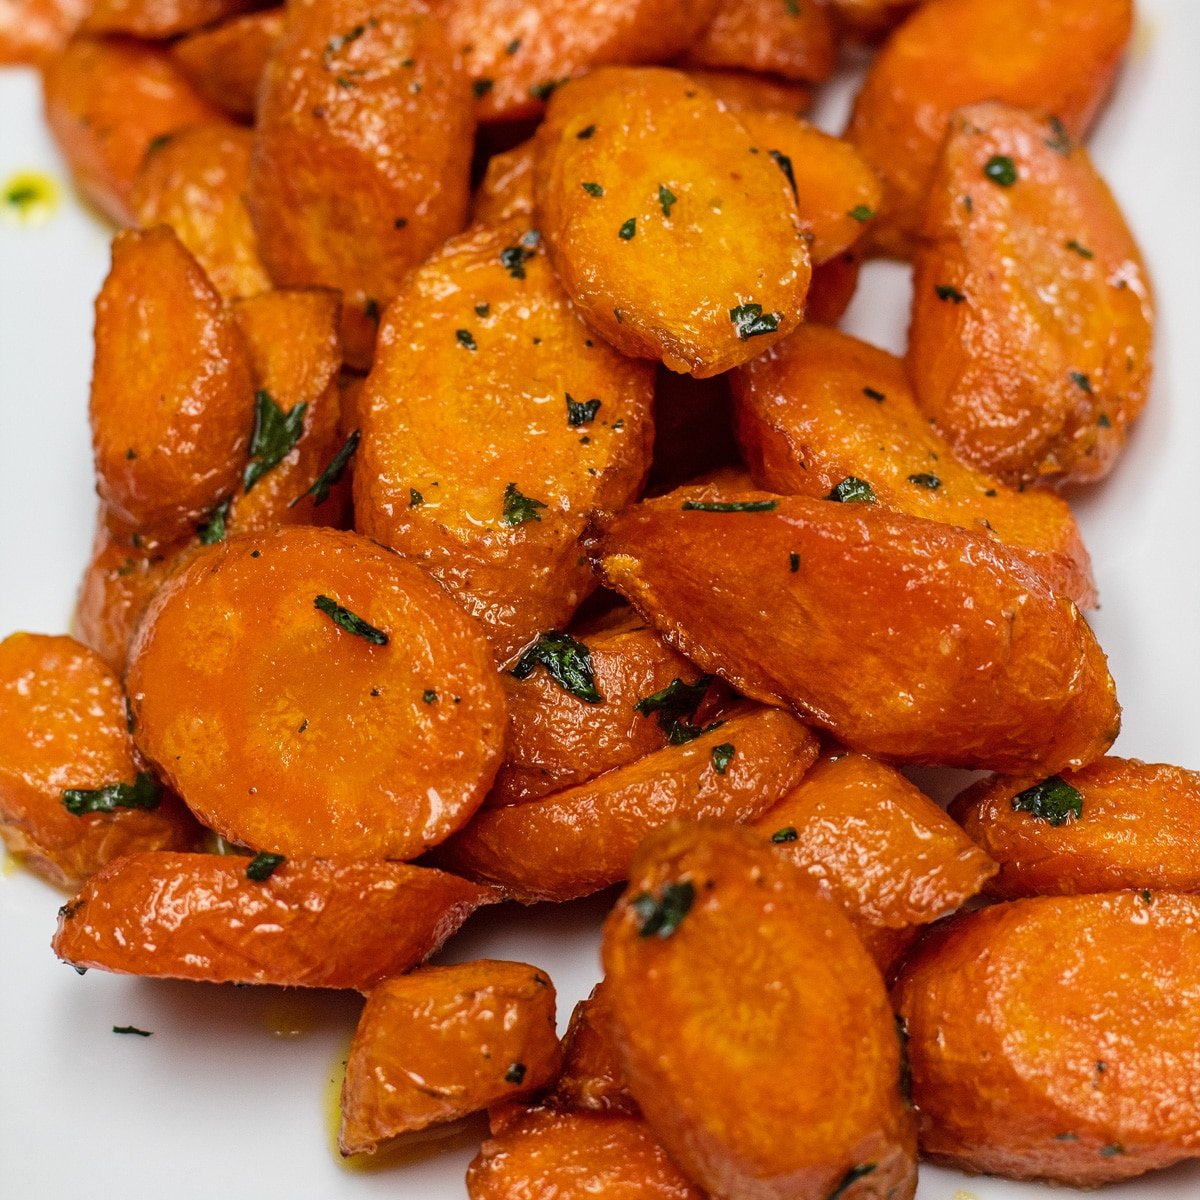 Zanahorias fáciles de freír cocinadas a la perfección tiernas y servidas en un plato blanco.